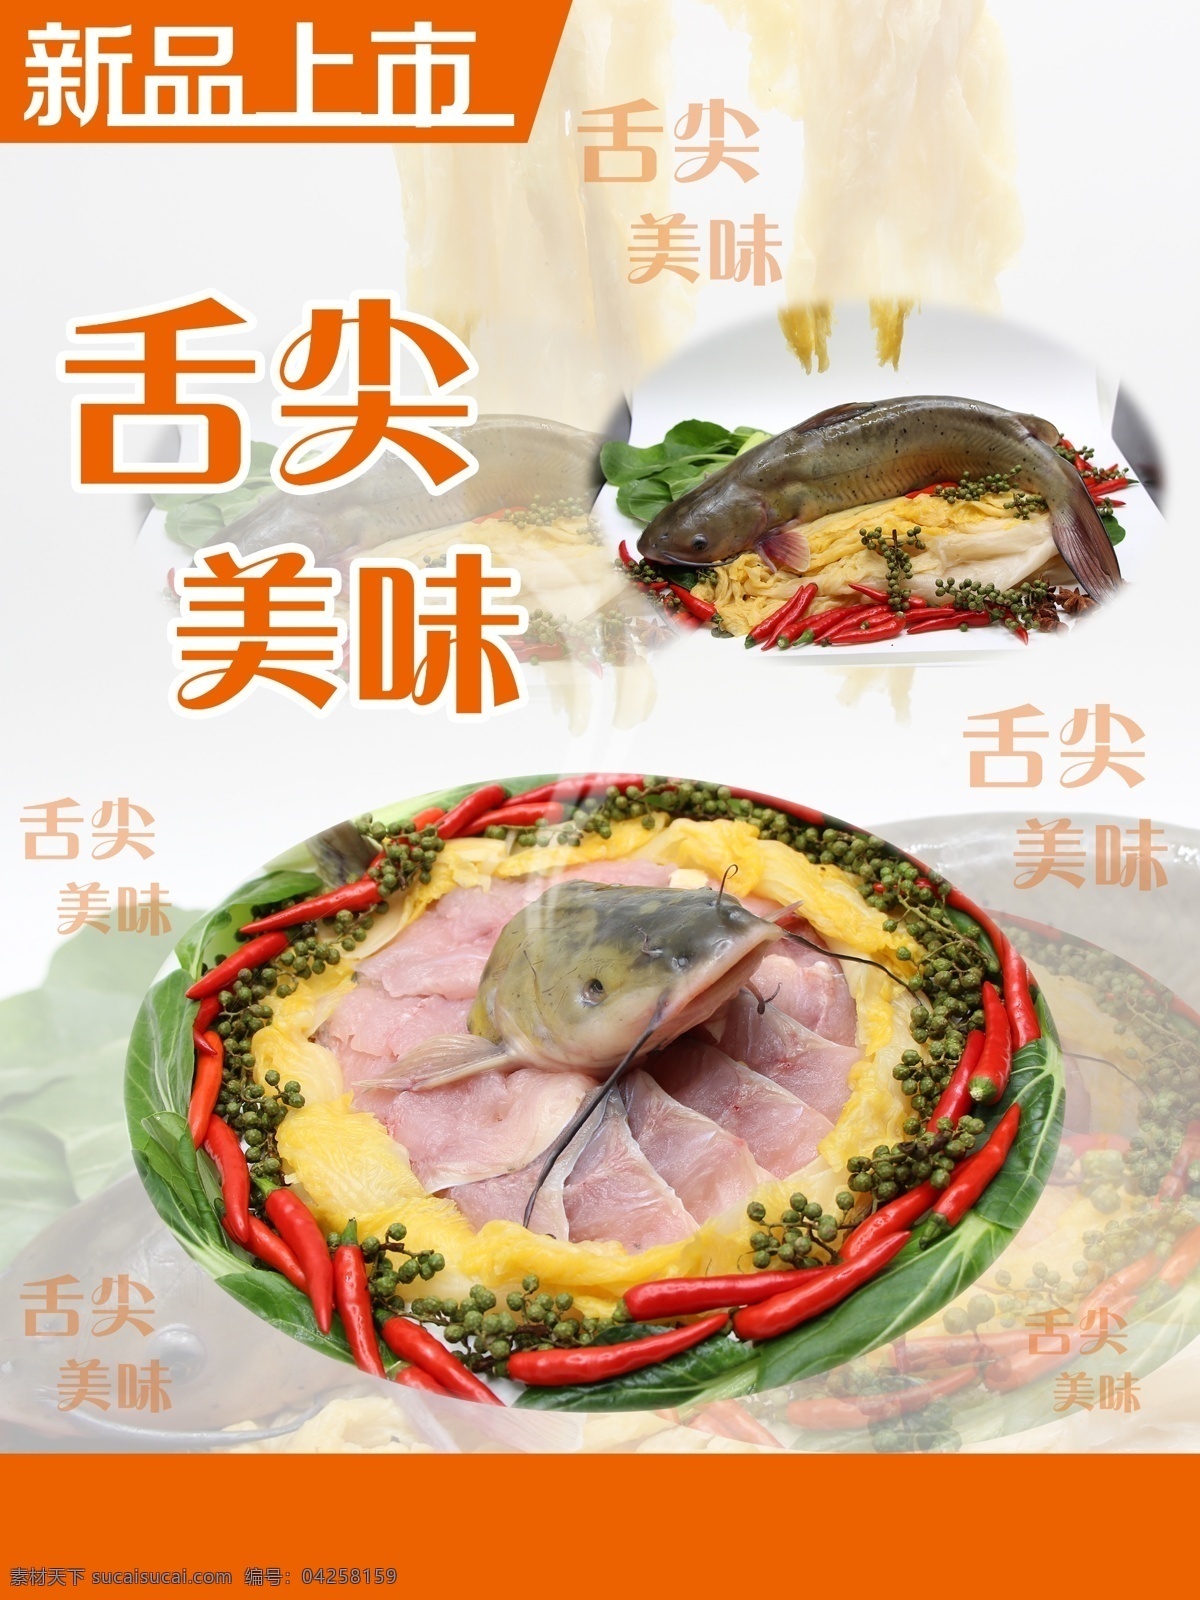 酸菜鱼海报 酸菜鱼 文字 新品上市 橘色 背景鱼